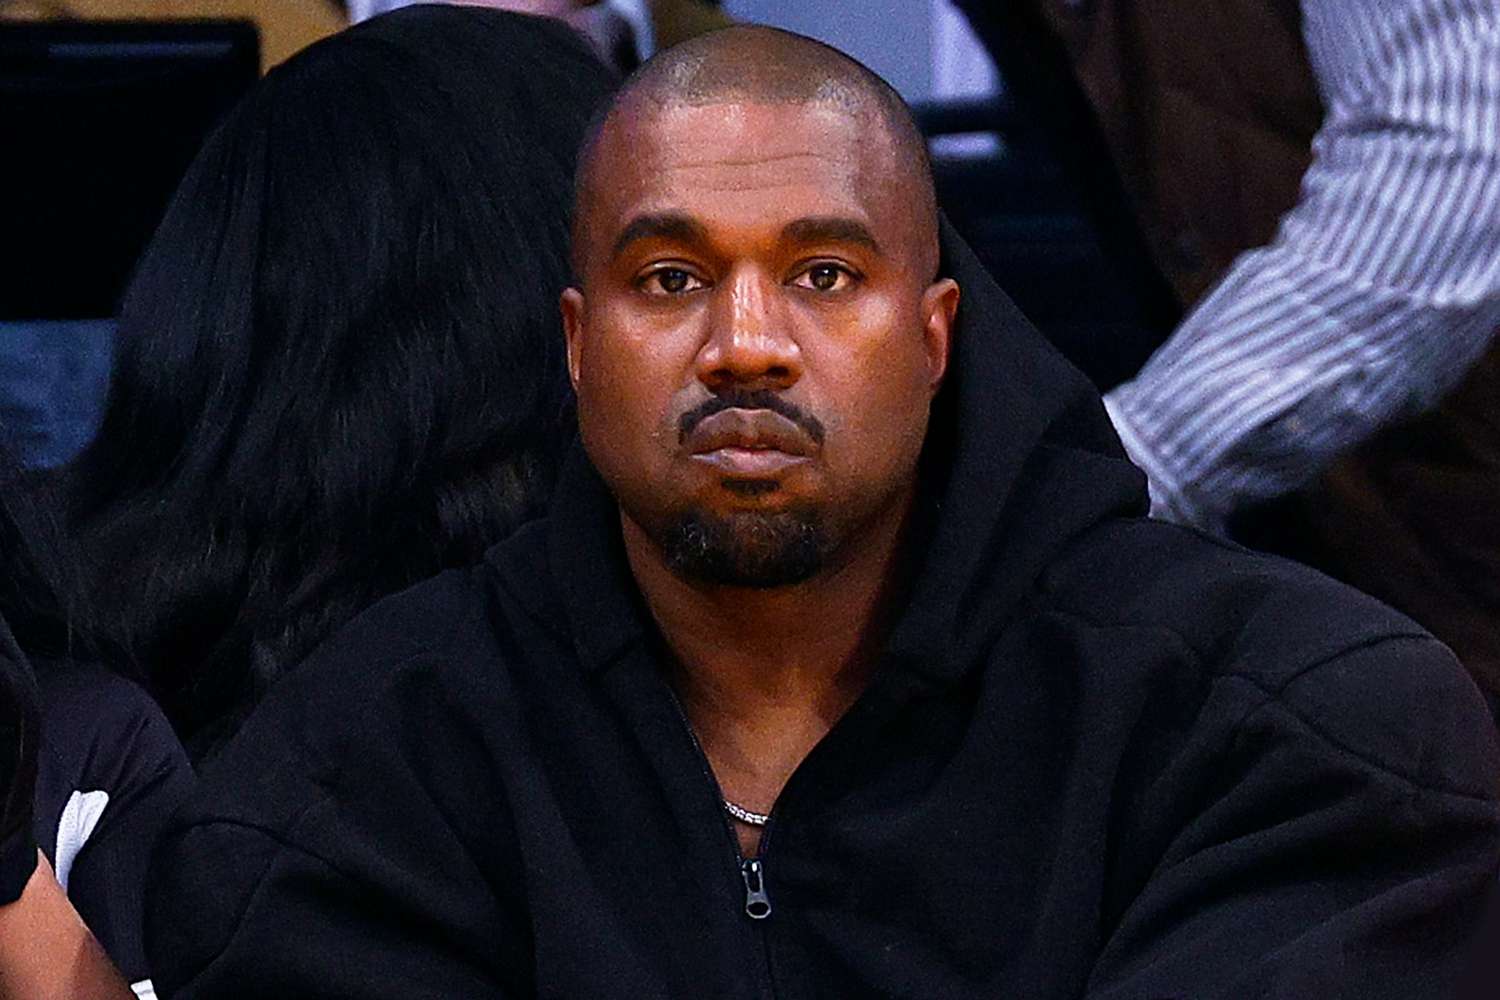 Kanye West's Grammys performance canceled over online behavior | EW.com